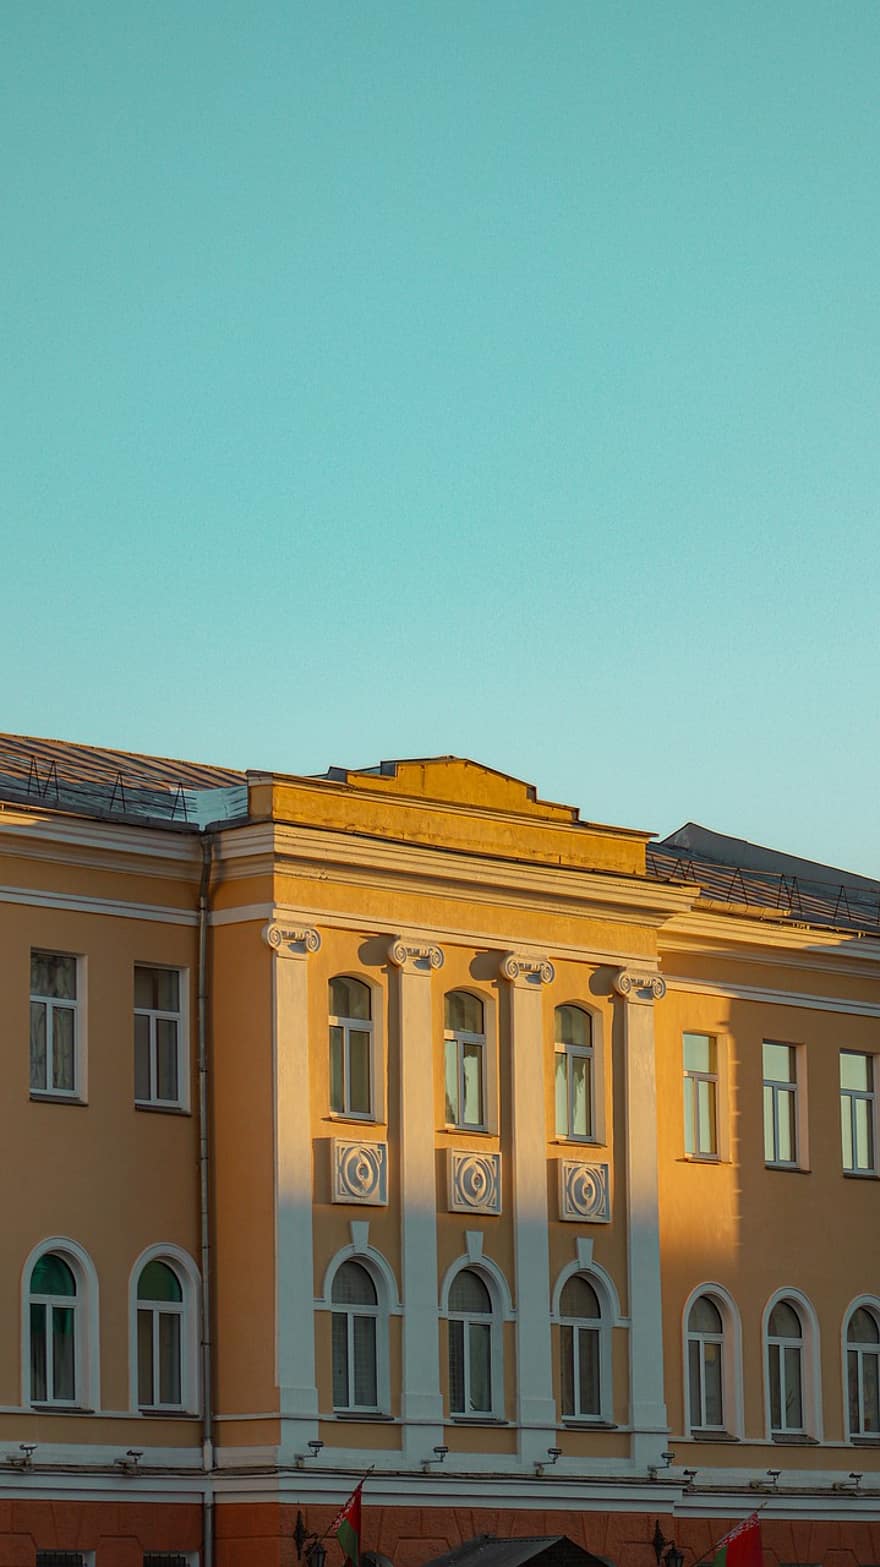 minsk, bina, mimari, Belarus, cephe, malikâne, dış yapı, yapılı yapı, pencere, mavi, Cityscape